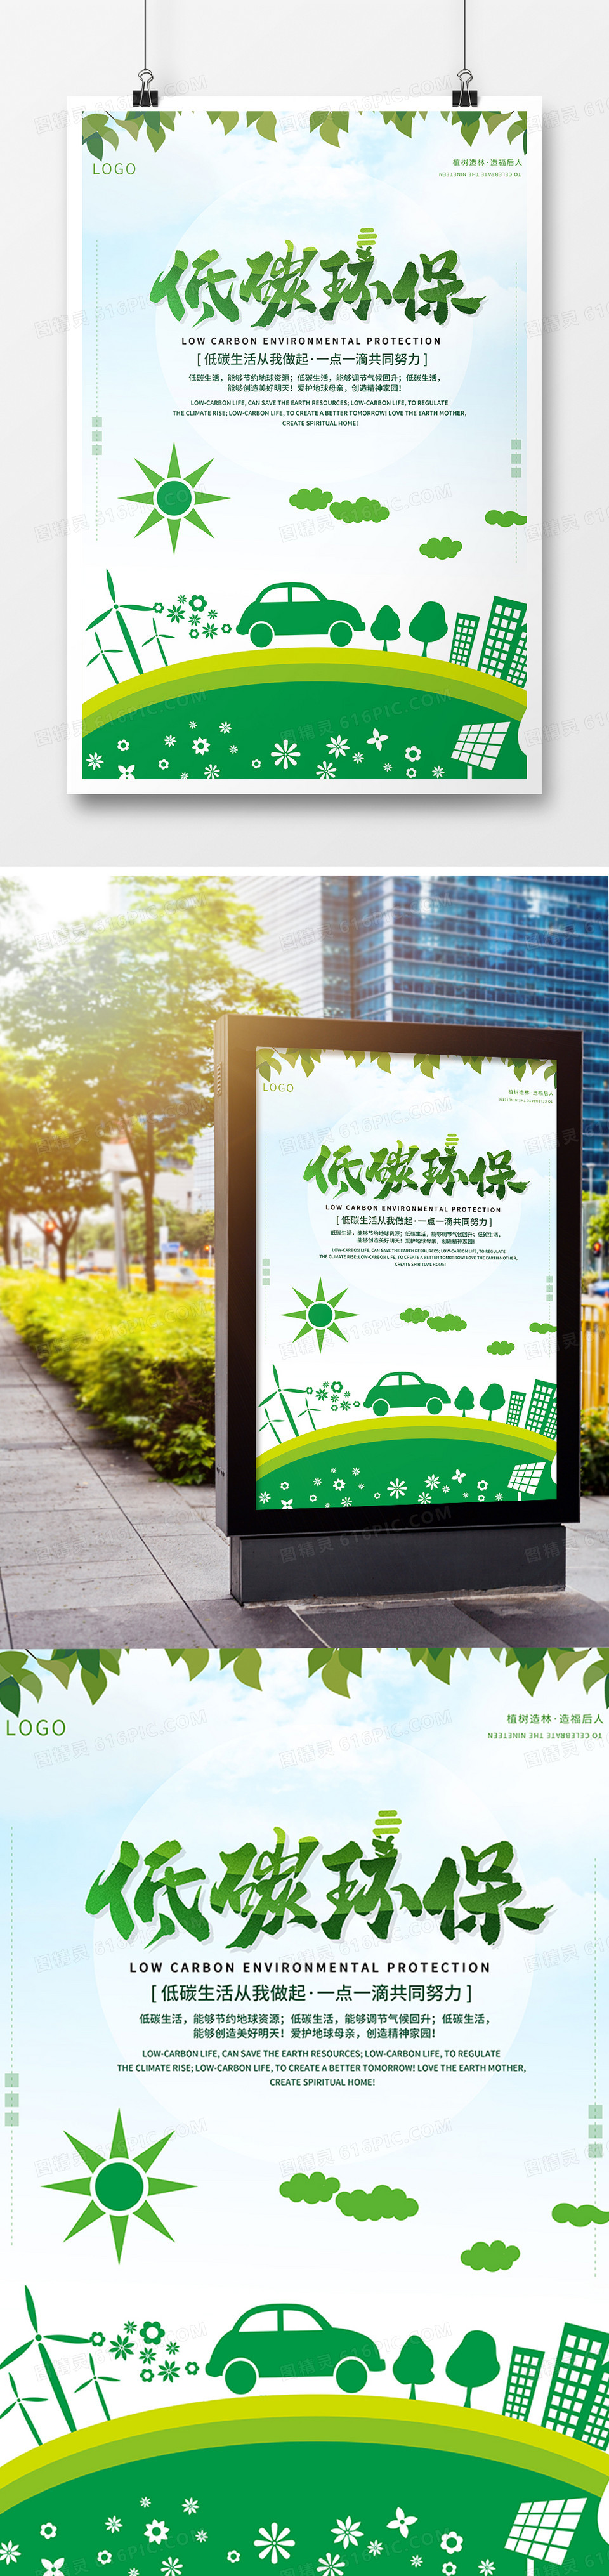 低碳环保公益海报设计